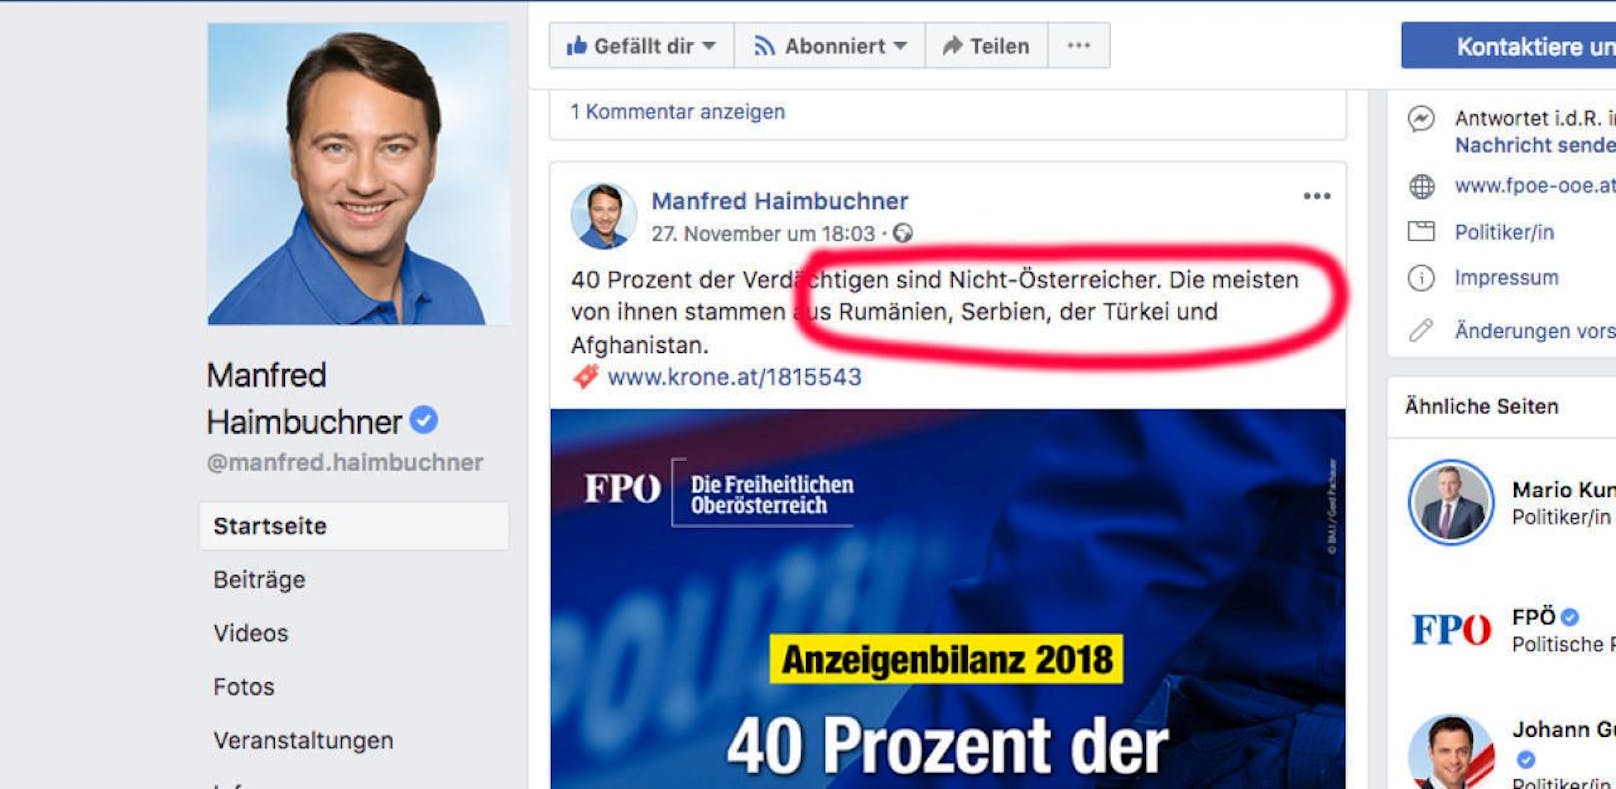 Bei seinem Facebook-Posting vergaß Haimbuchner offenbar, die zweitgrößte Gruppe der ausländischen Tatverdächtigen zu nennen: nämlich die Deutschen.